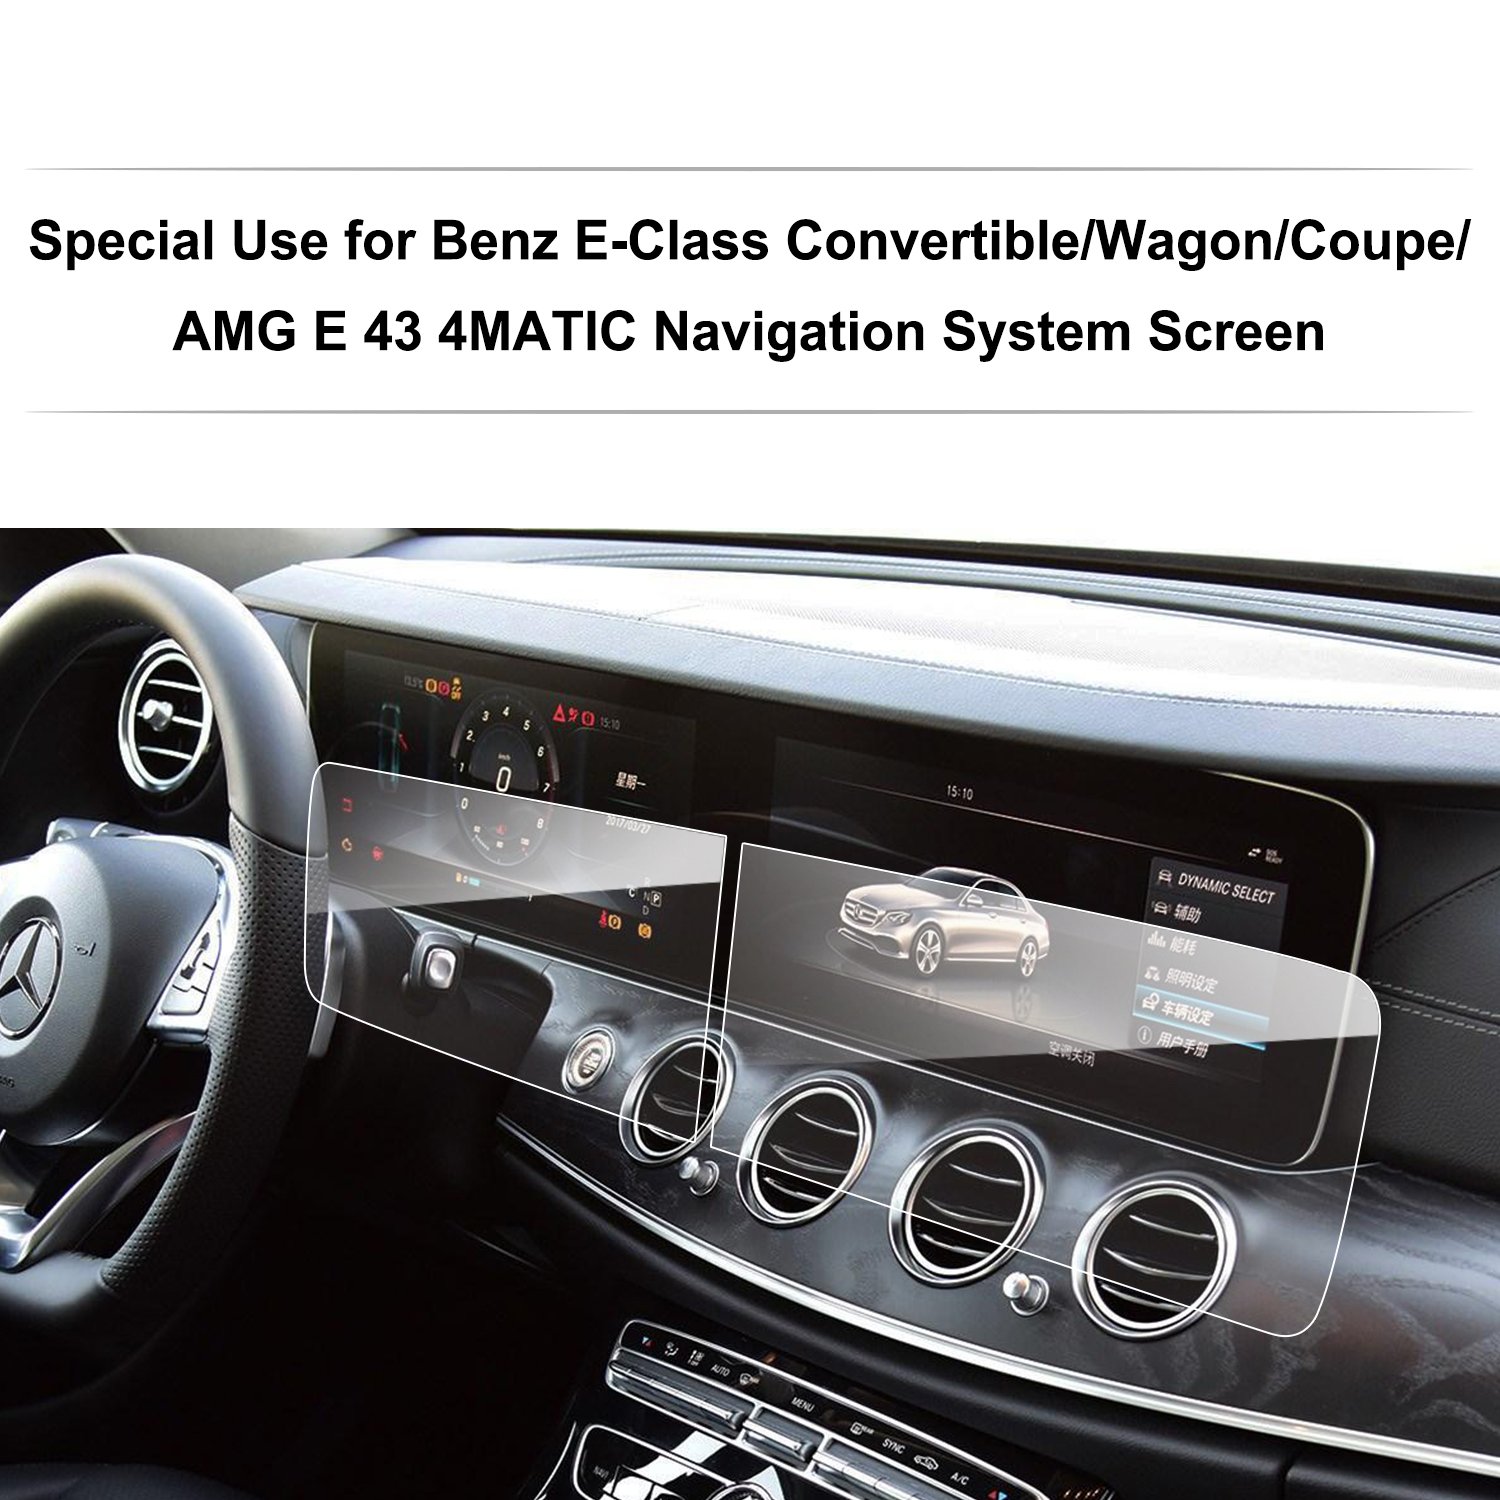 LFOTPP Mercedes-Benz E-Klasse AMG Navigation Schutzfolie und Instrumententafel Schutzfolie [2 Stück] - 9H Anti-Scratch Anti-Fingerprint Folie von LFOTPP